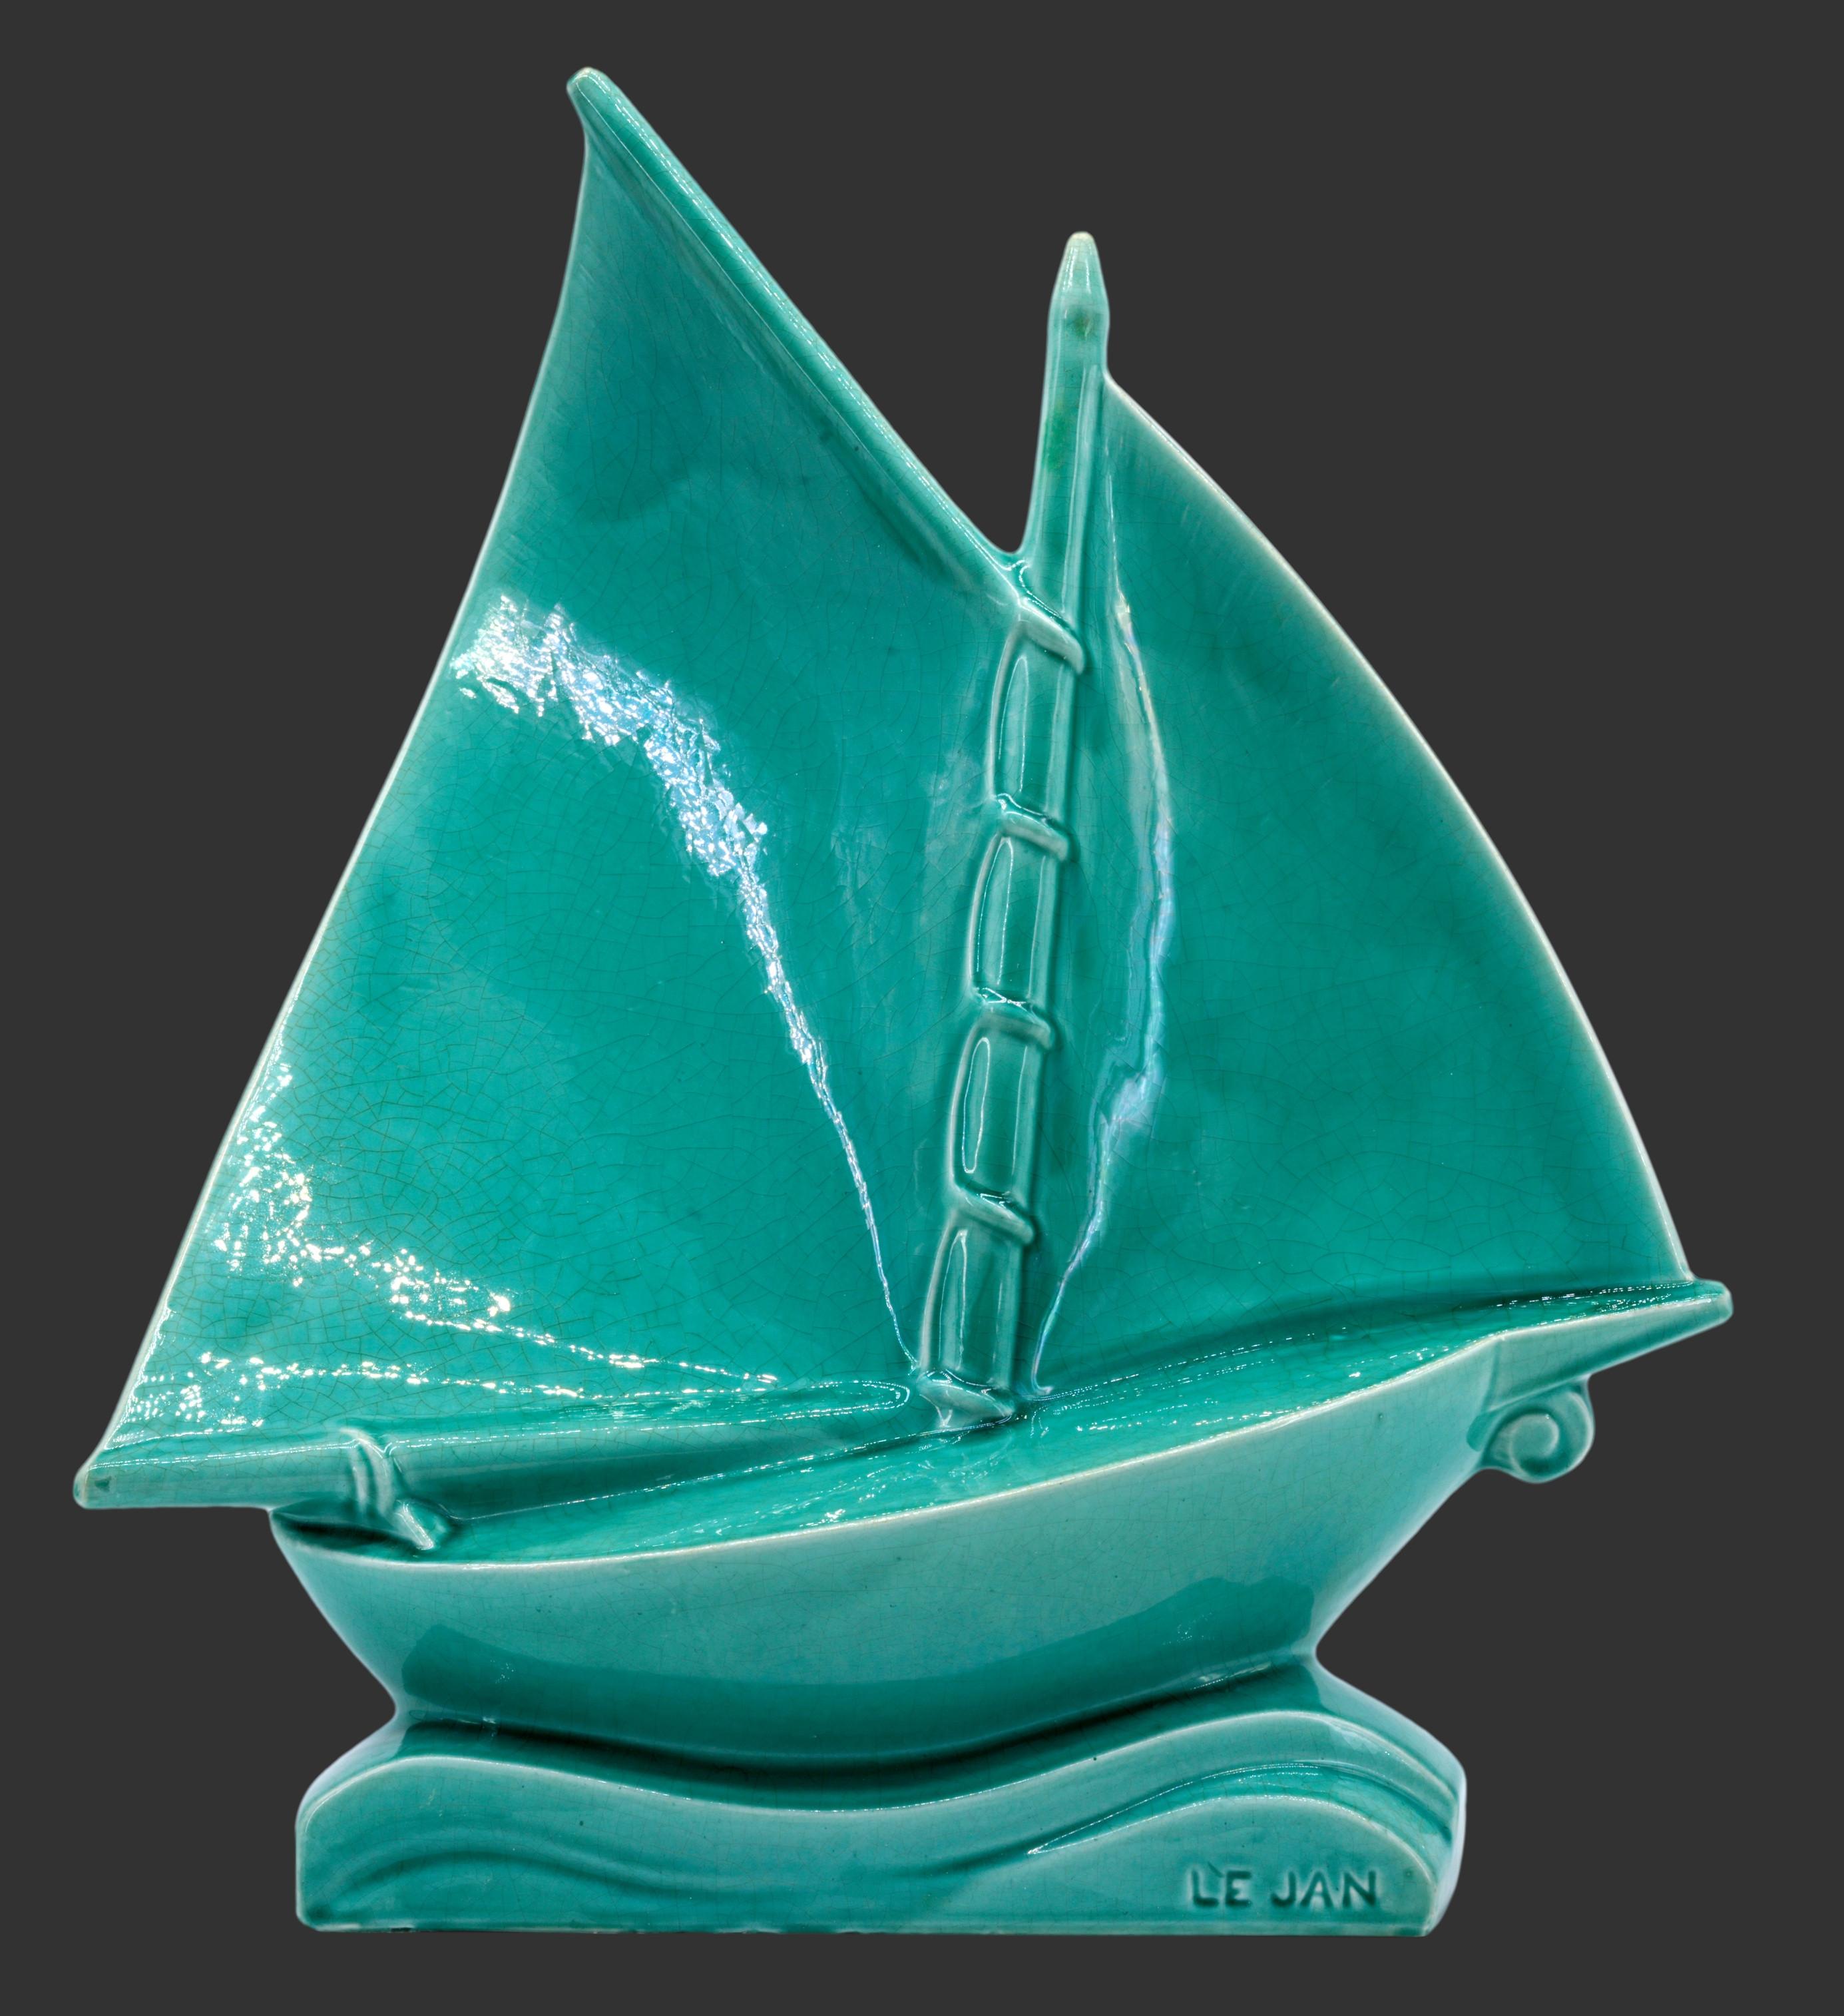 Sculpture de bateau en céramique à glaçure craquelée par LEJAN à Orchies, France, vers les années 1920. Merveilleuse couleur verte. Largeur : 16,5